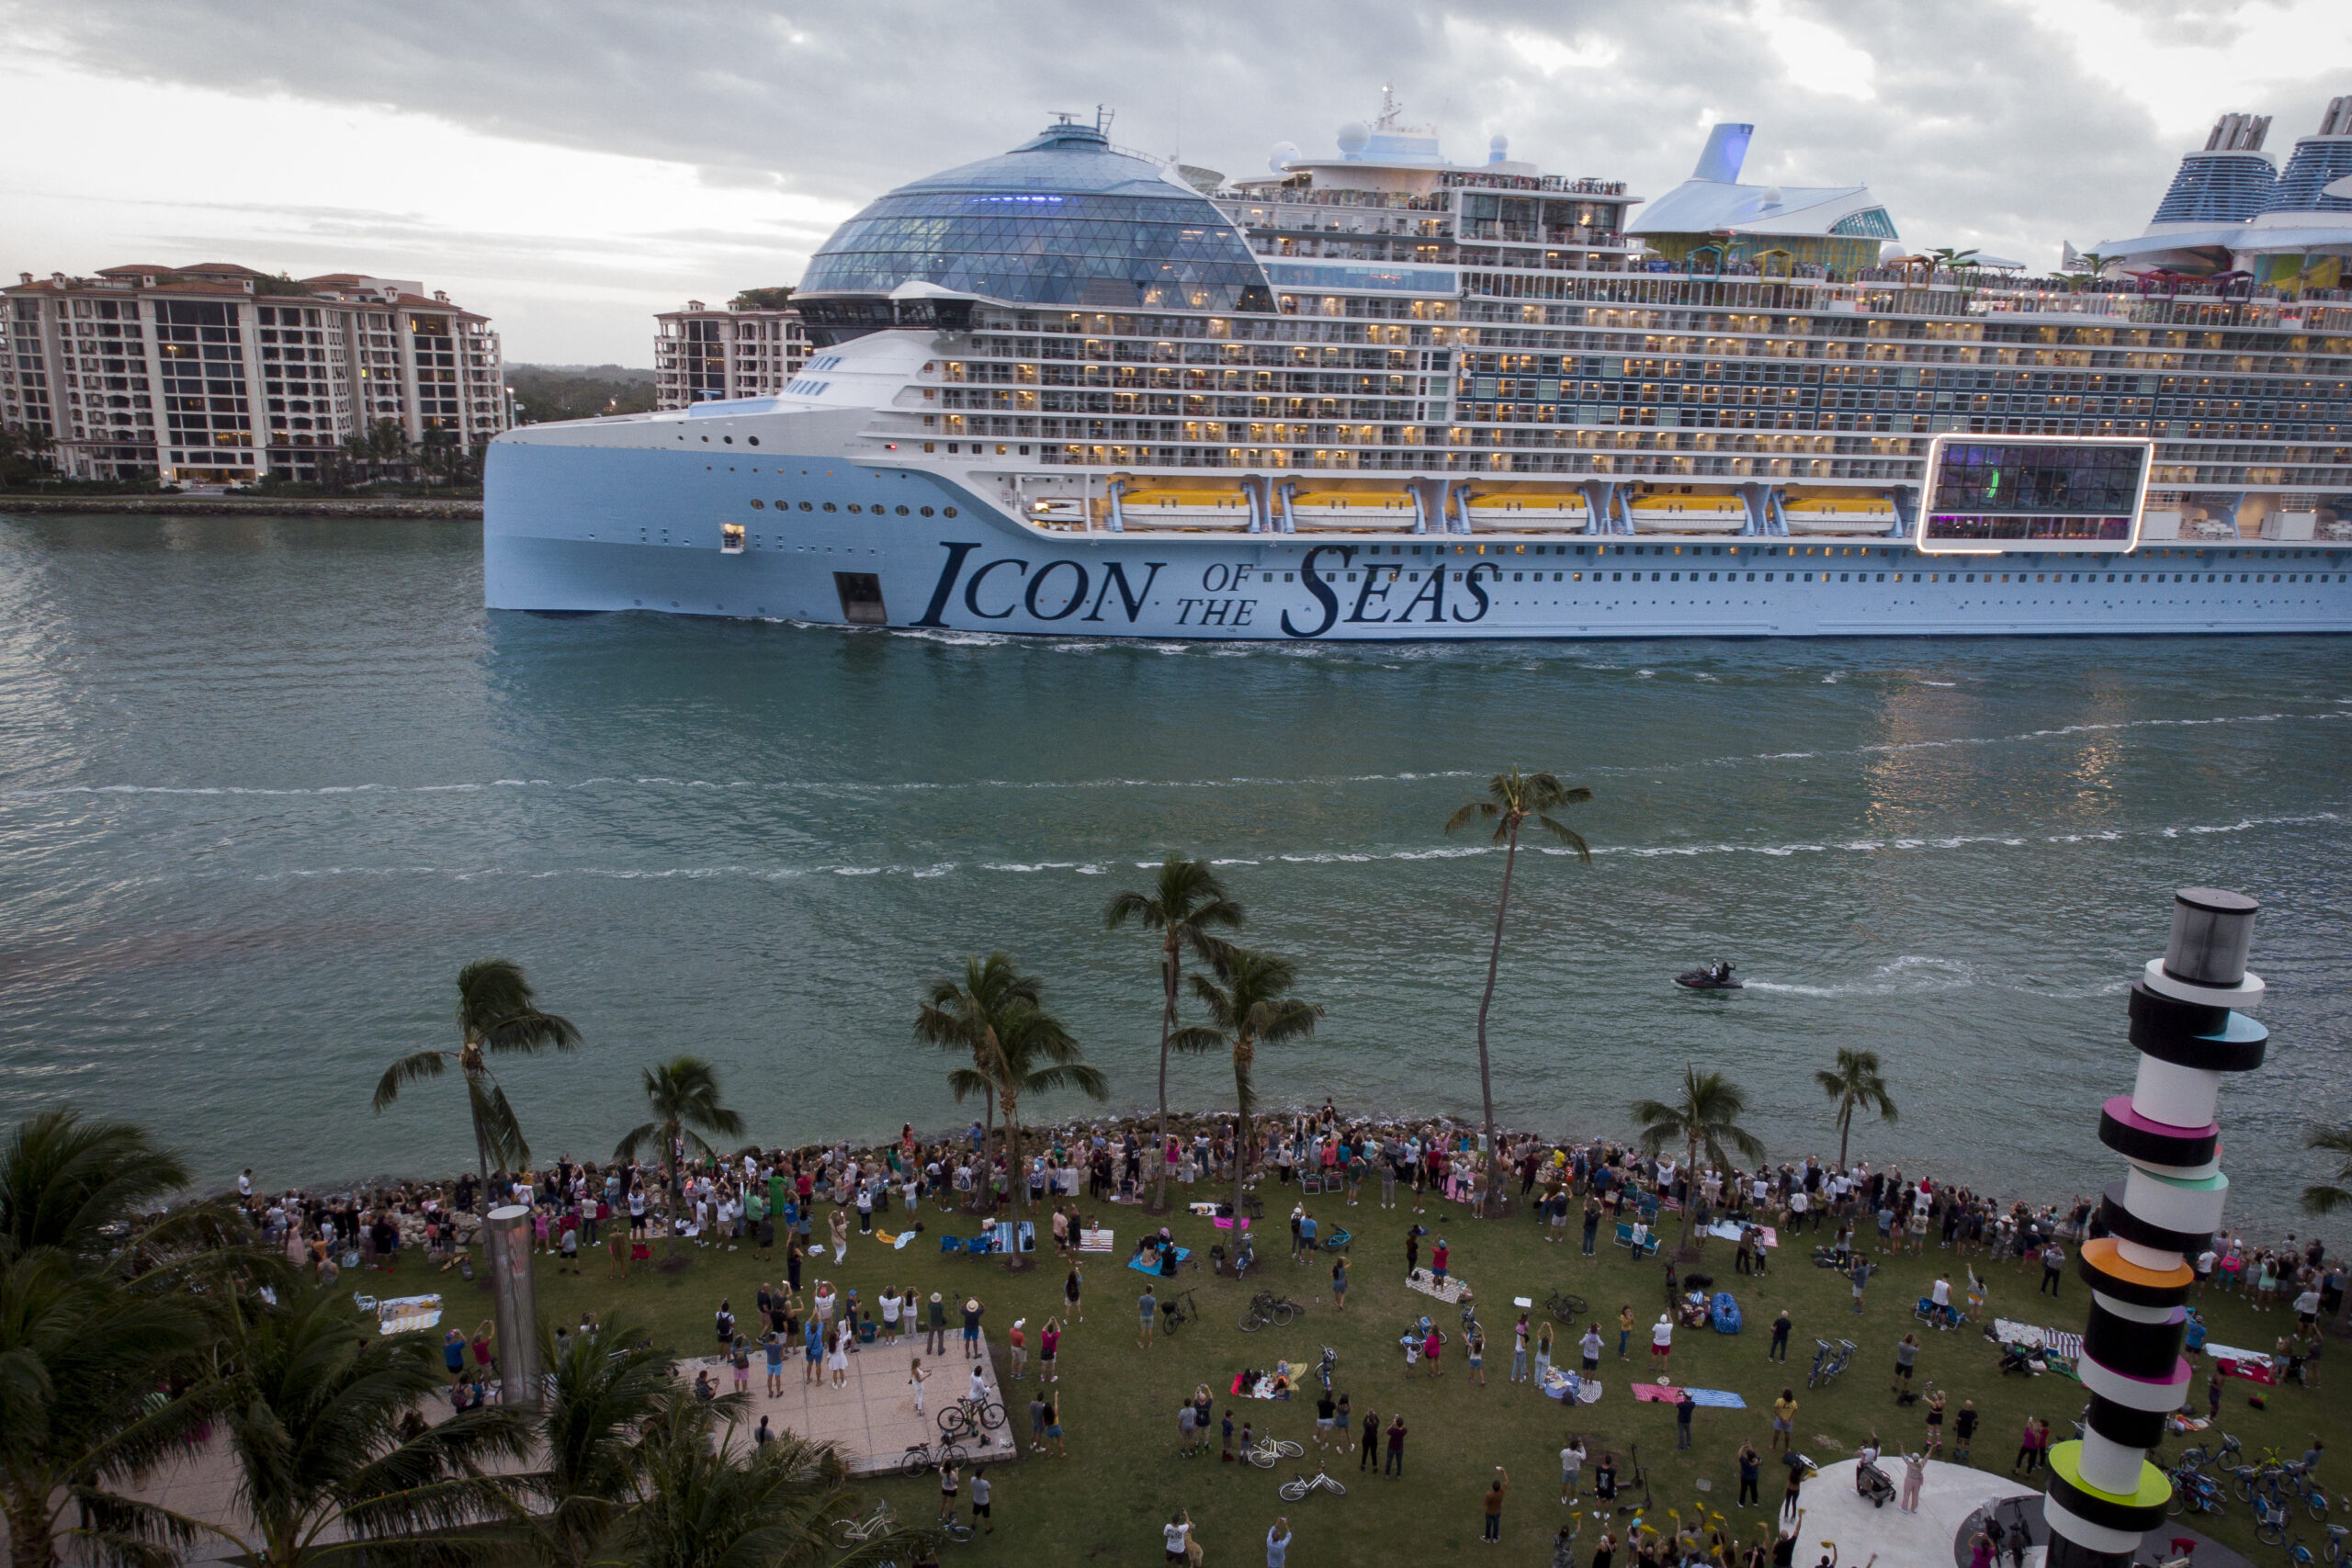 Βίντεο – Φωτογραφίες: Το μεγαλύτερο κρουαζιερόπλοιο στον κόσμο «Icon of the Seas» ξεκίνησε το παρθενικό του ταξίδι